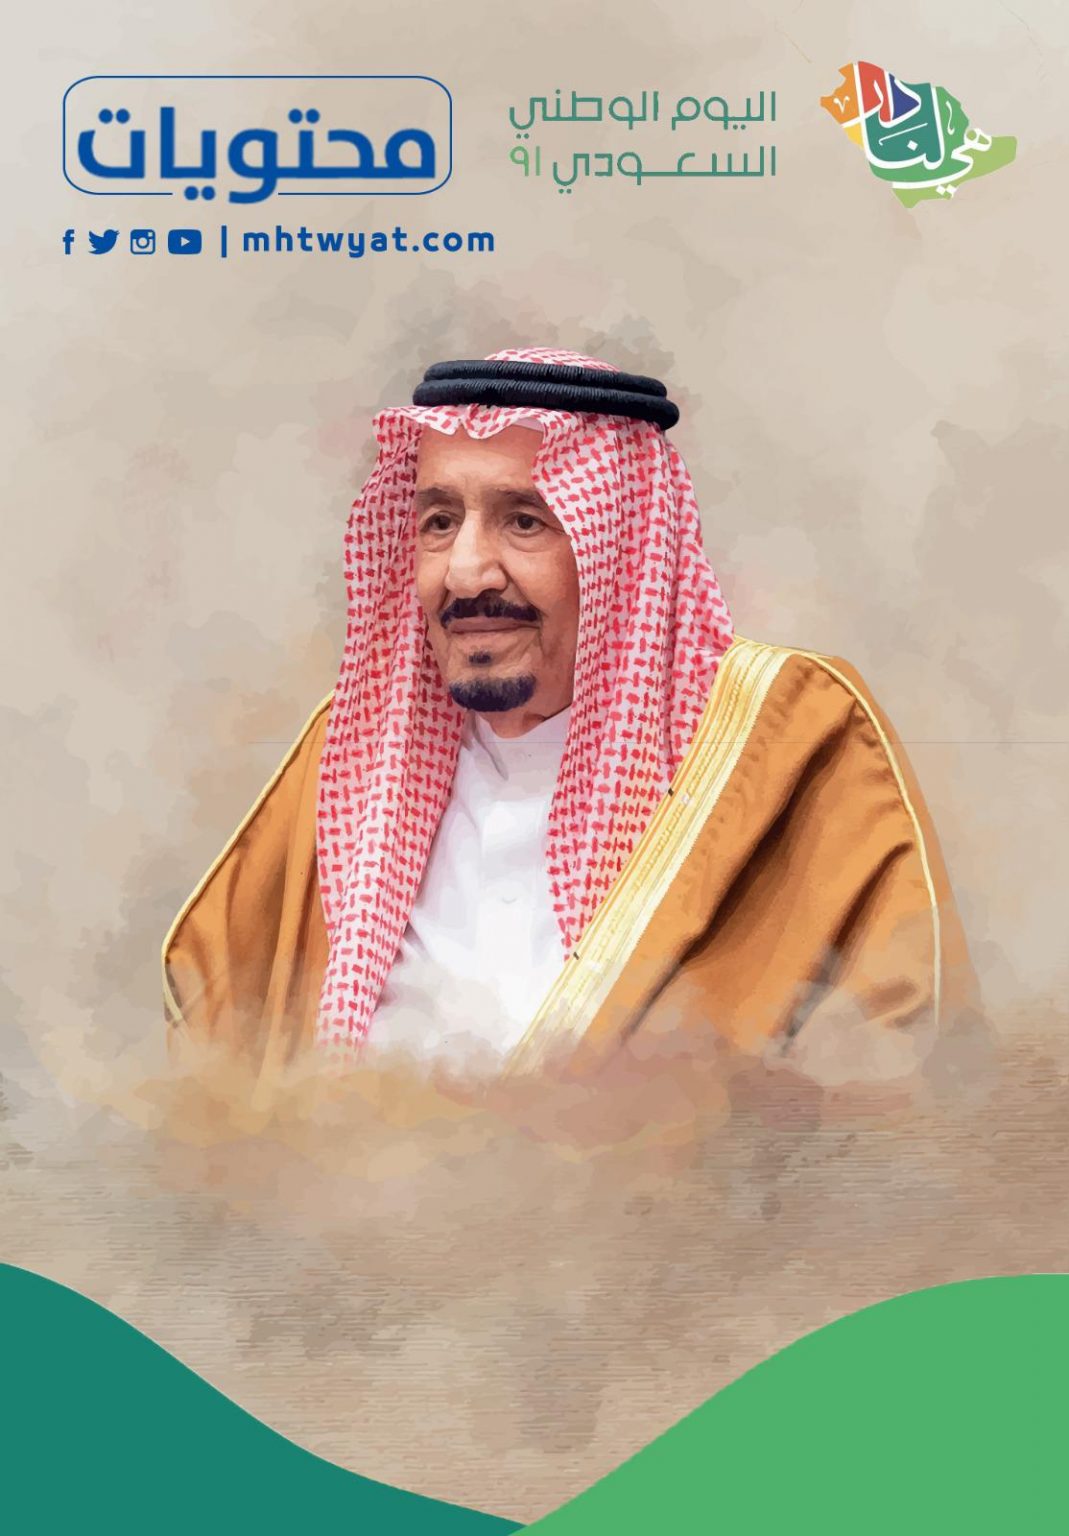 صور للملك والوطن بمناسبة اليوم الوطني السعودي 91